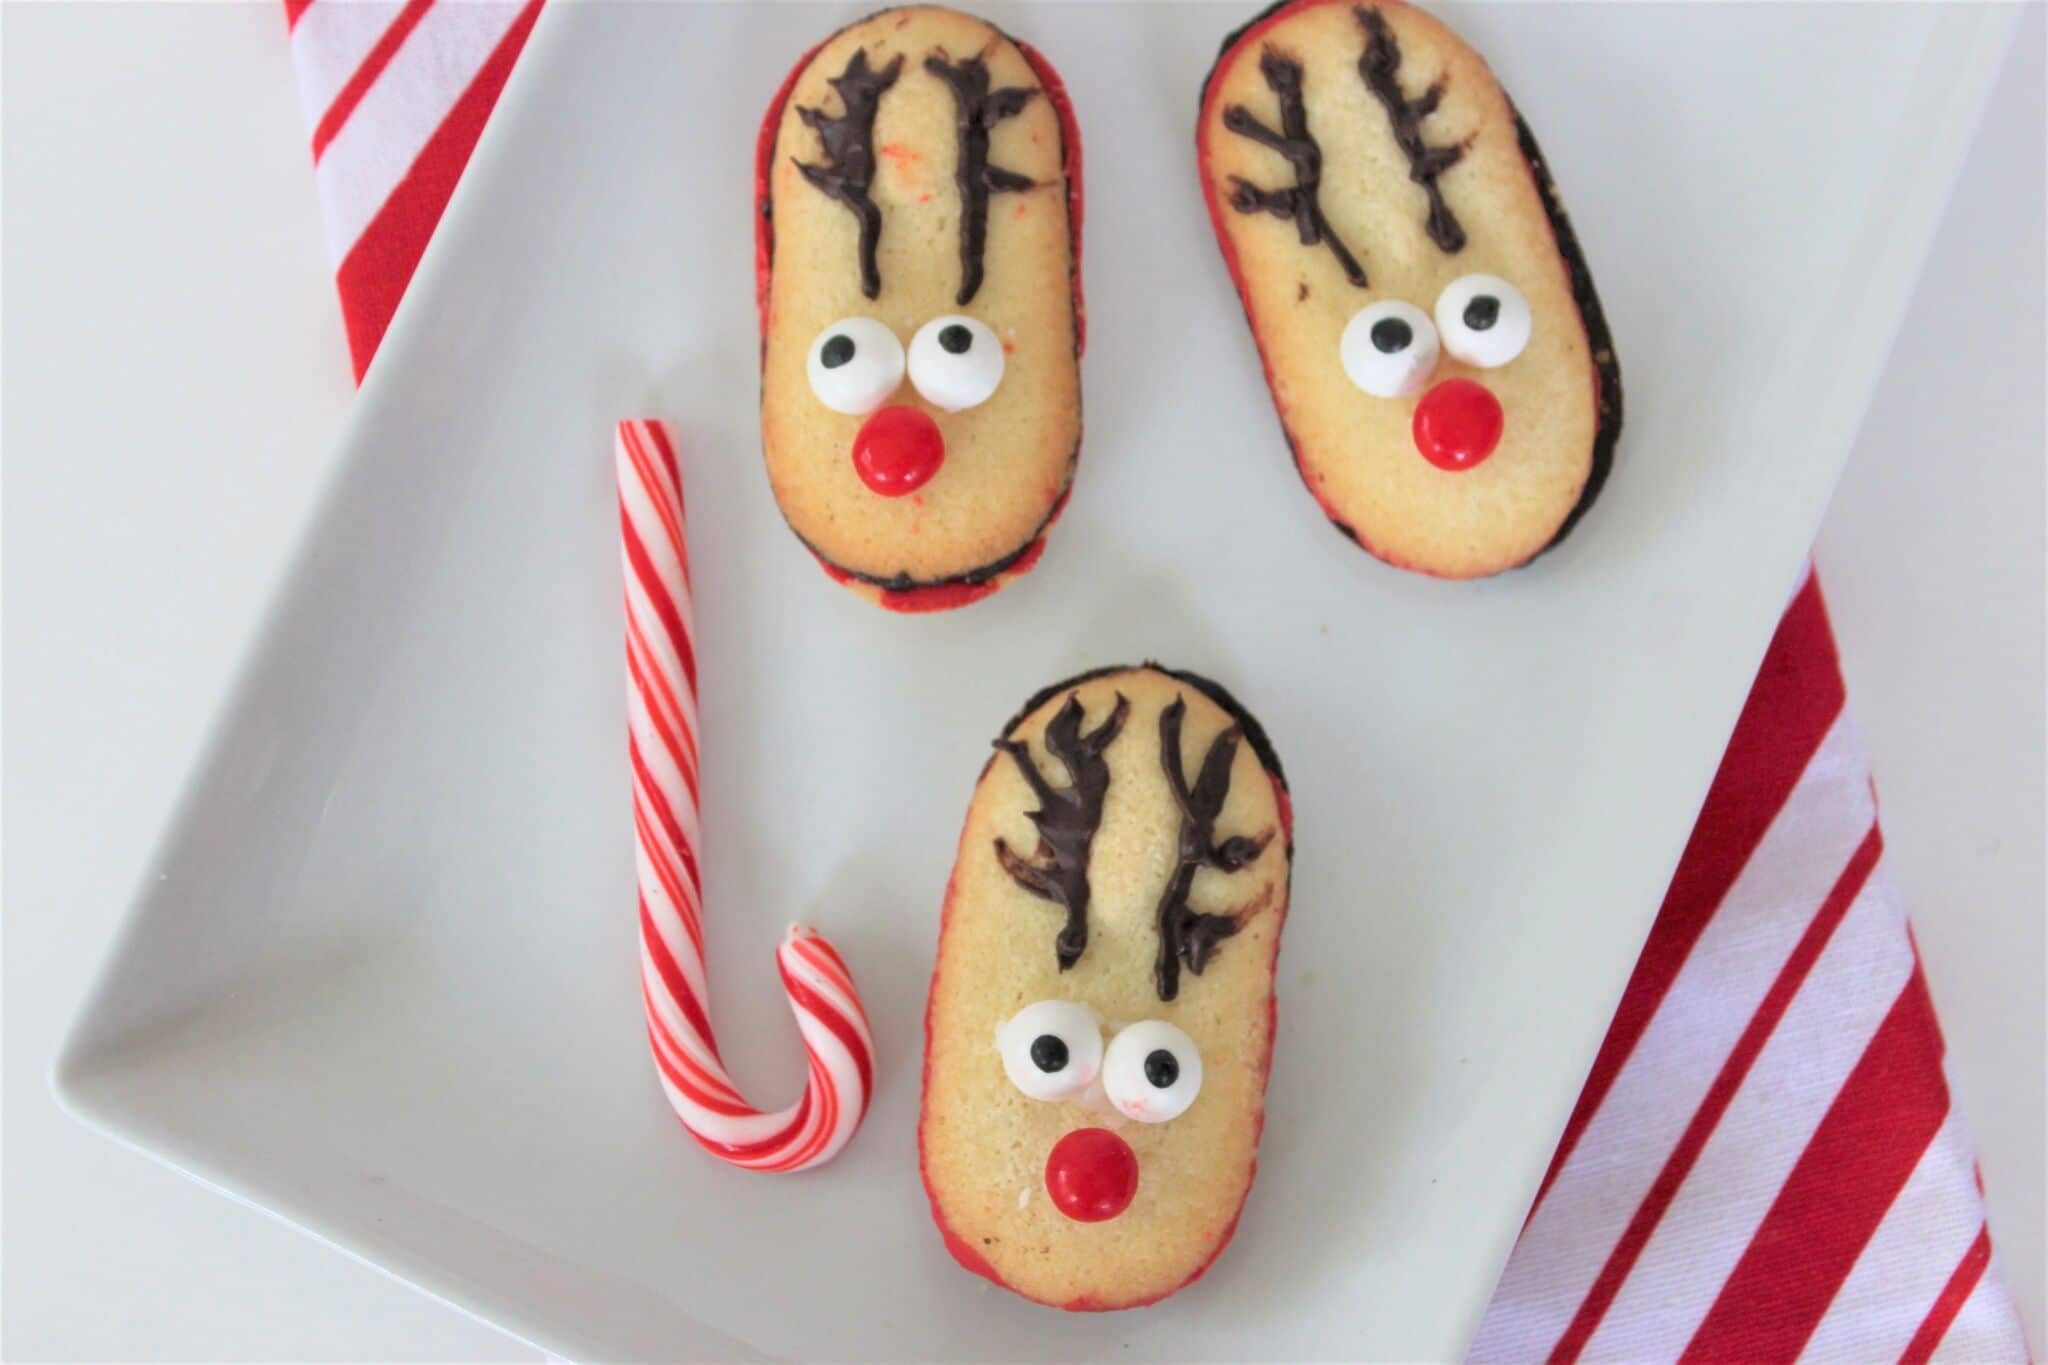 milano cookies made to look like reindeer